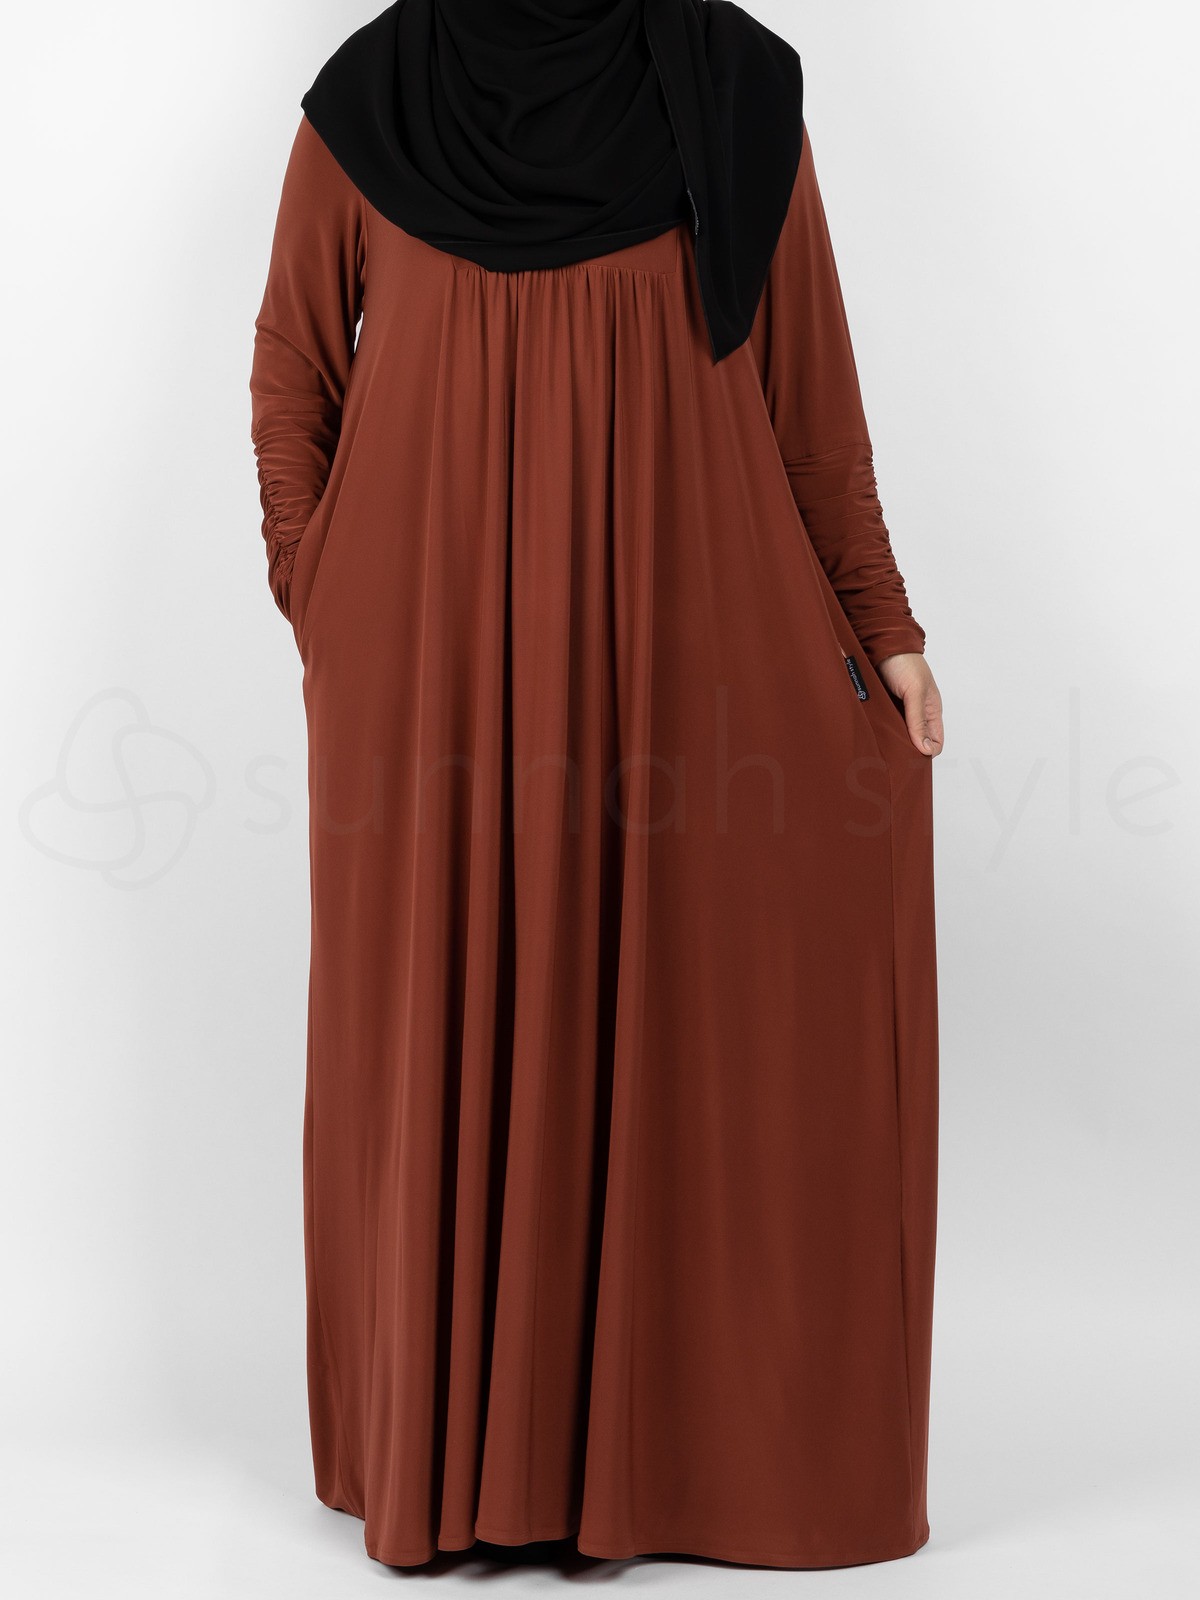 Sunnah Style - Flourish Jersey Abaya (Dark Amber)